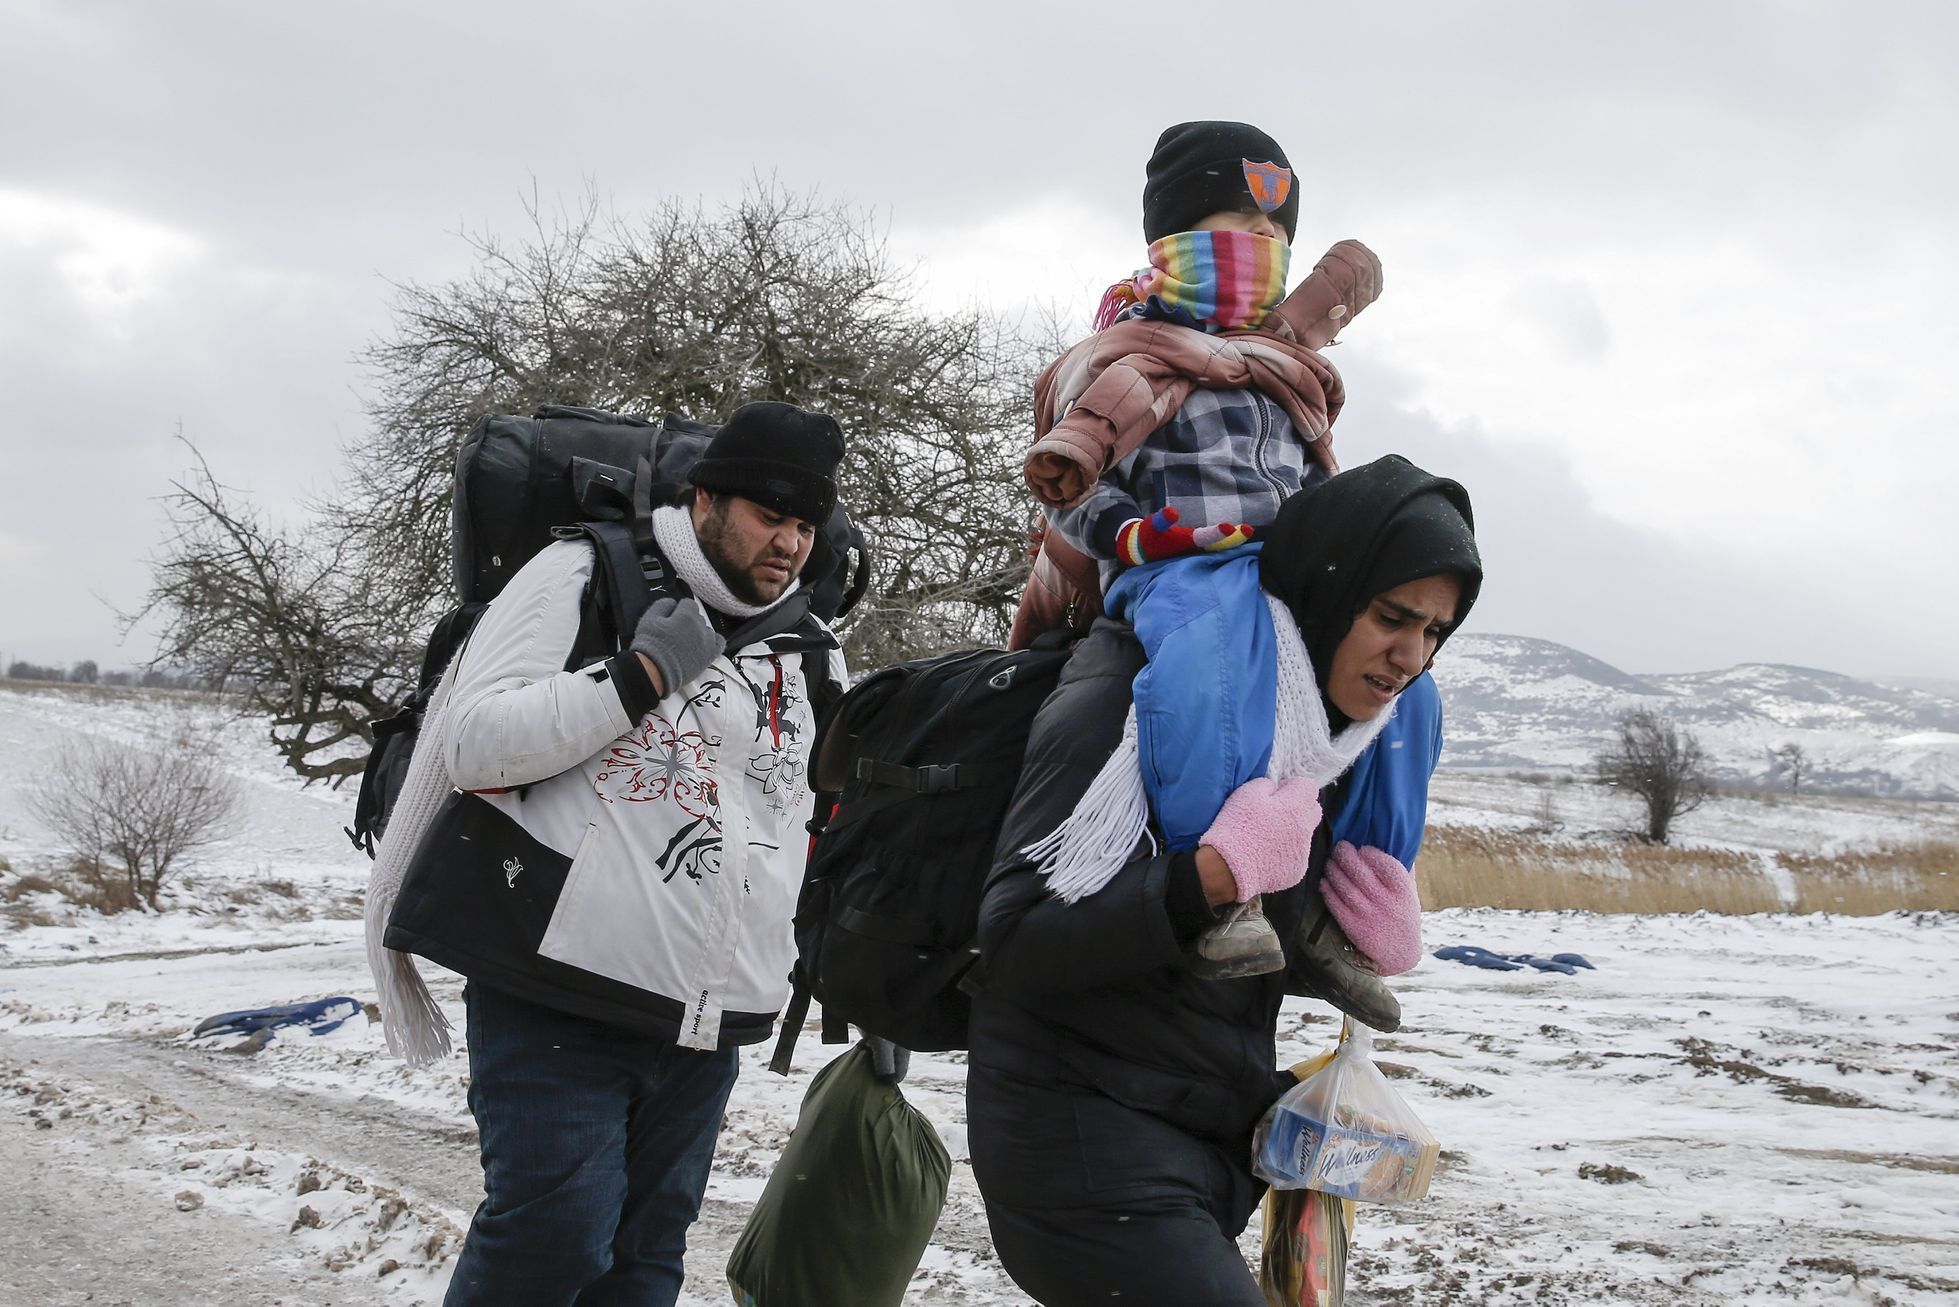 Rodina uprchlíků na makedonsko-srbské hranici.